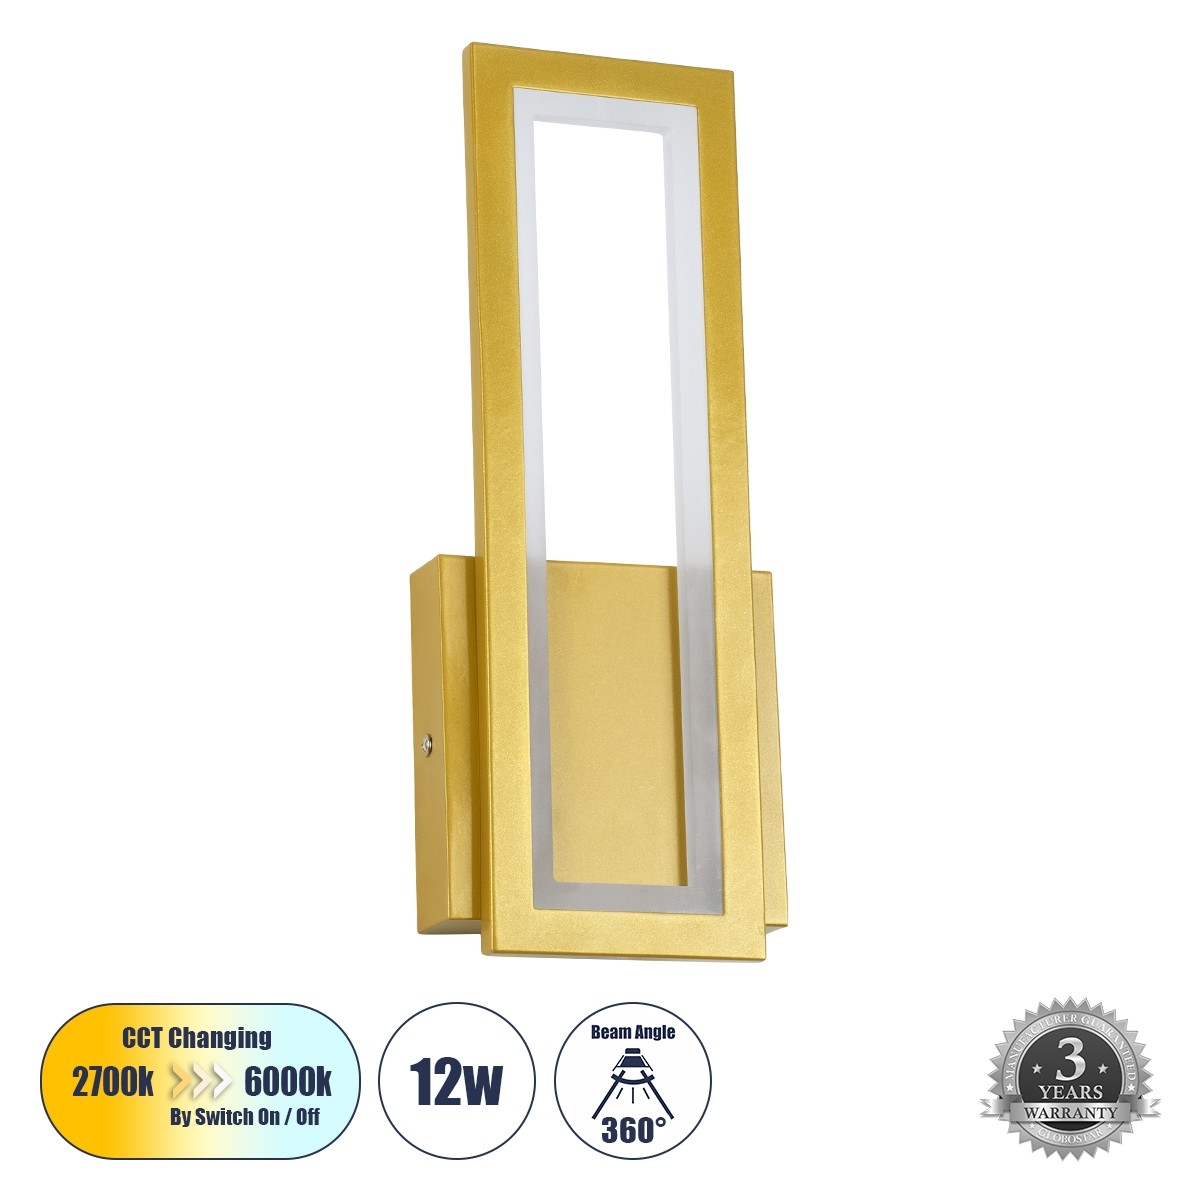 LED Φωτιστικό Τοίχου - Απλίκα Χρυσή TIARA 12W με Εναλλαγή Φωτισμού μέσω Διακόπτη On/Off Μ12.5 x Π4 x Υ32cm 61328